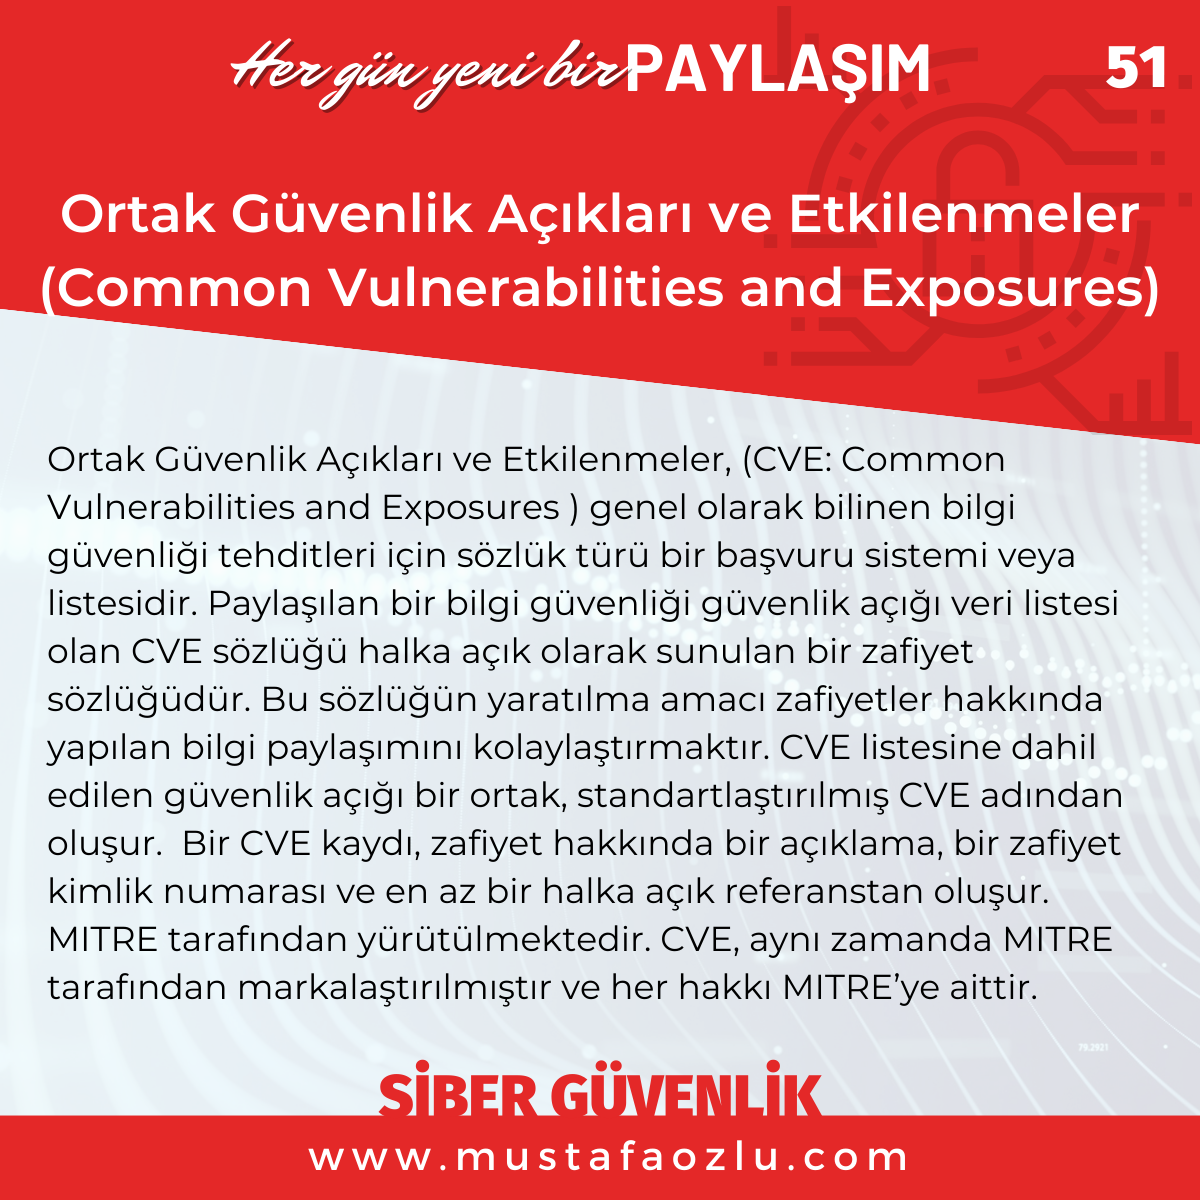 Ortak Güvenlik Açıkları ve Etkilenmeler 
(Common Vulnerabilities and Exposures) - Mustafa ÖZLÜ